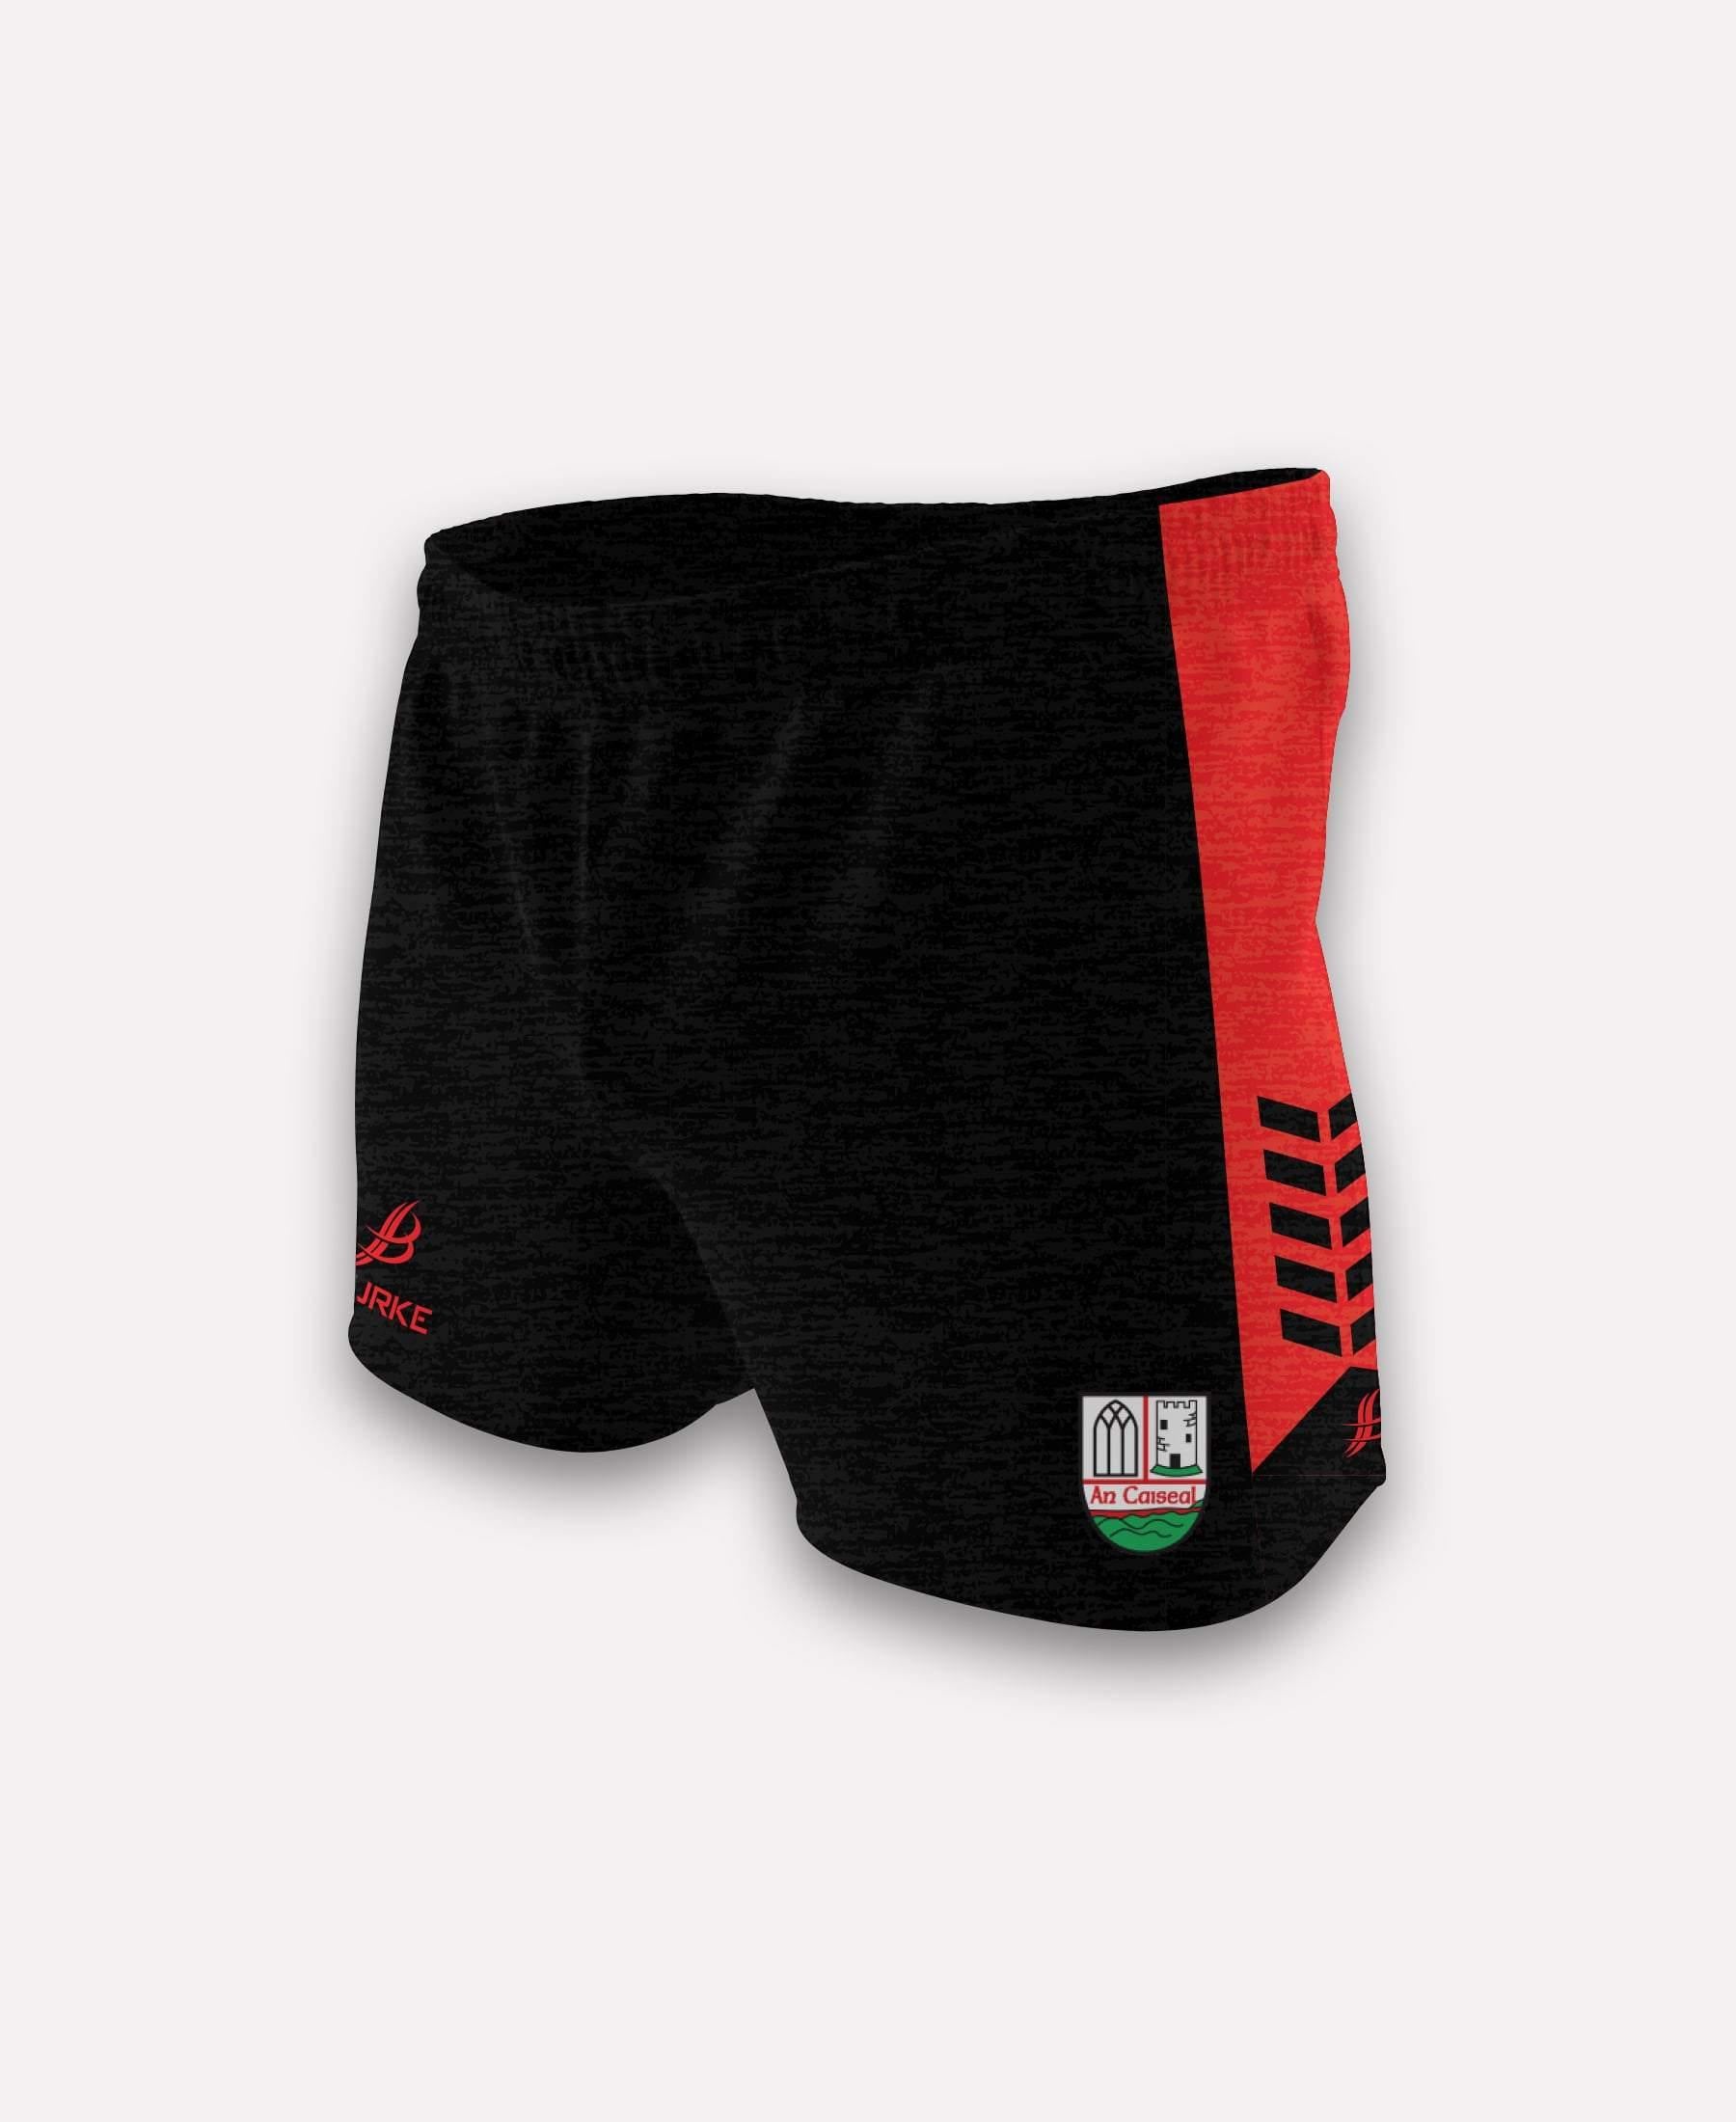 Cashel GAA Longford Shorts - Bourke Sports Limited